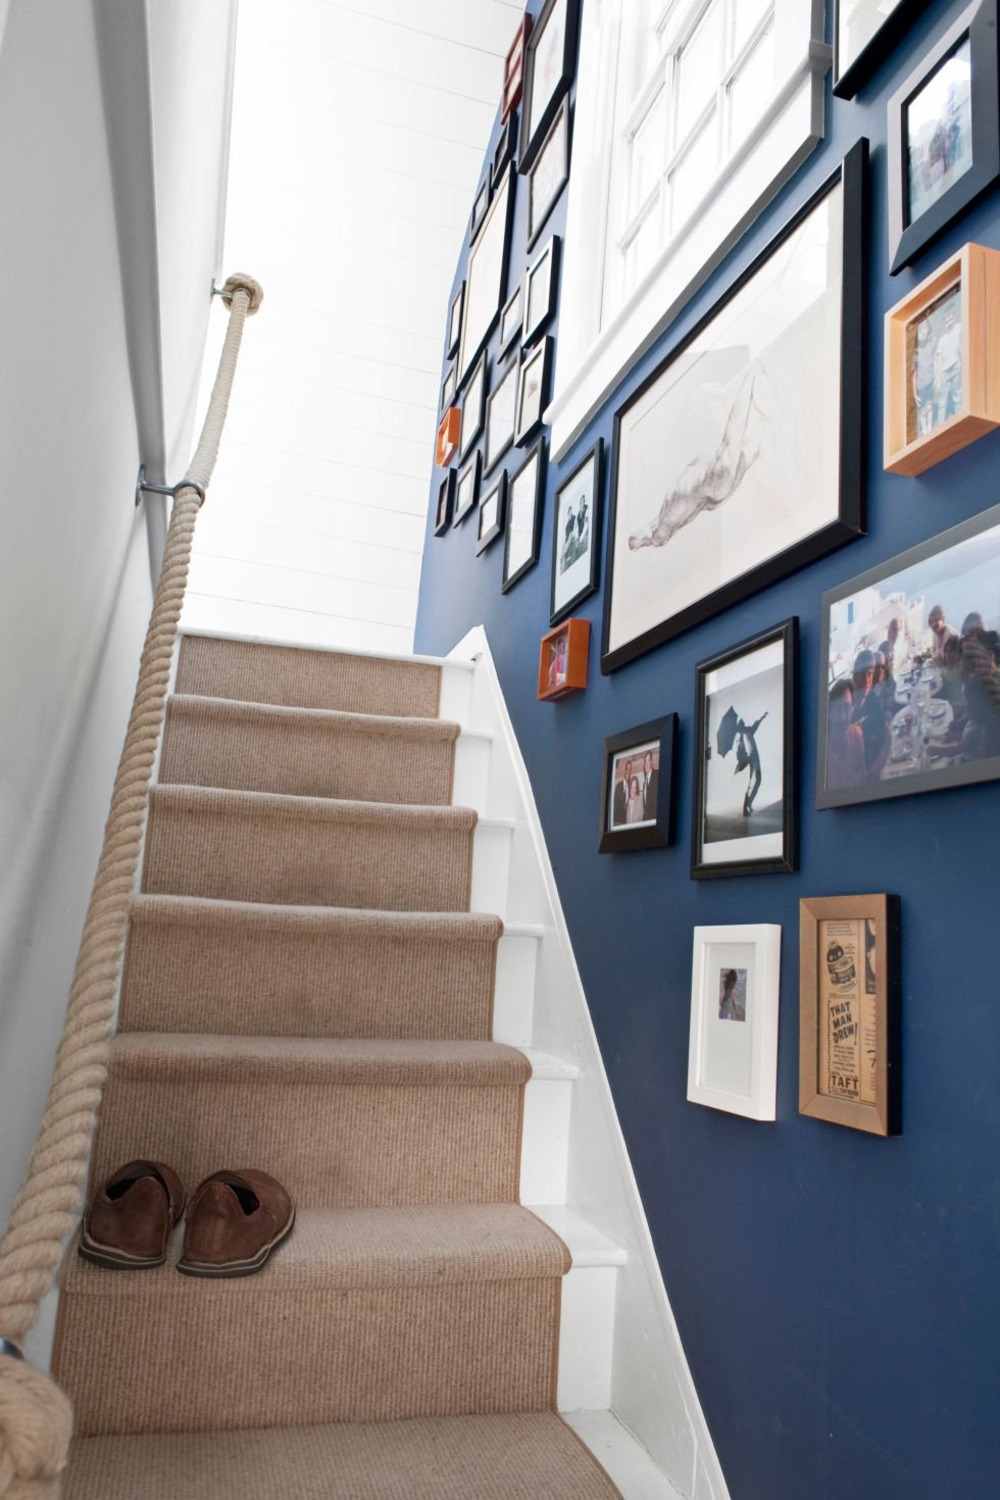 hellbrauner teppichläufer auf treppen mit treppenwand in blau dekoriert mit fotos